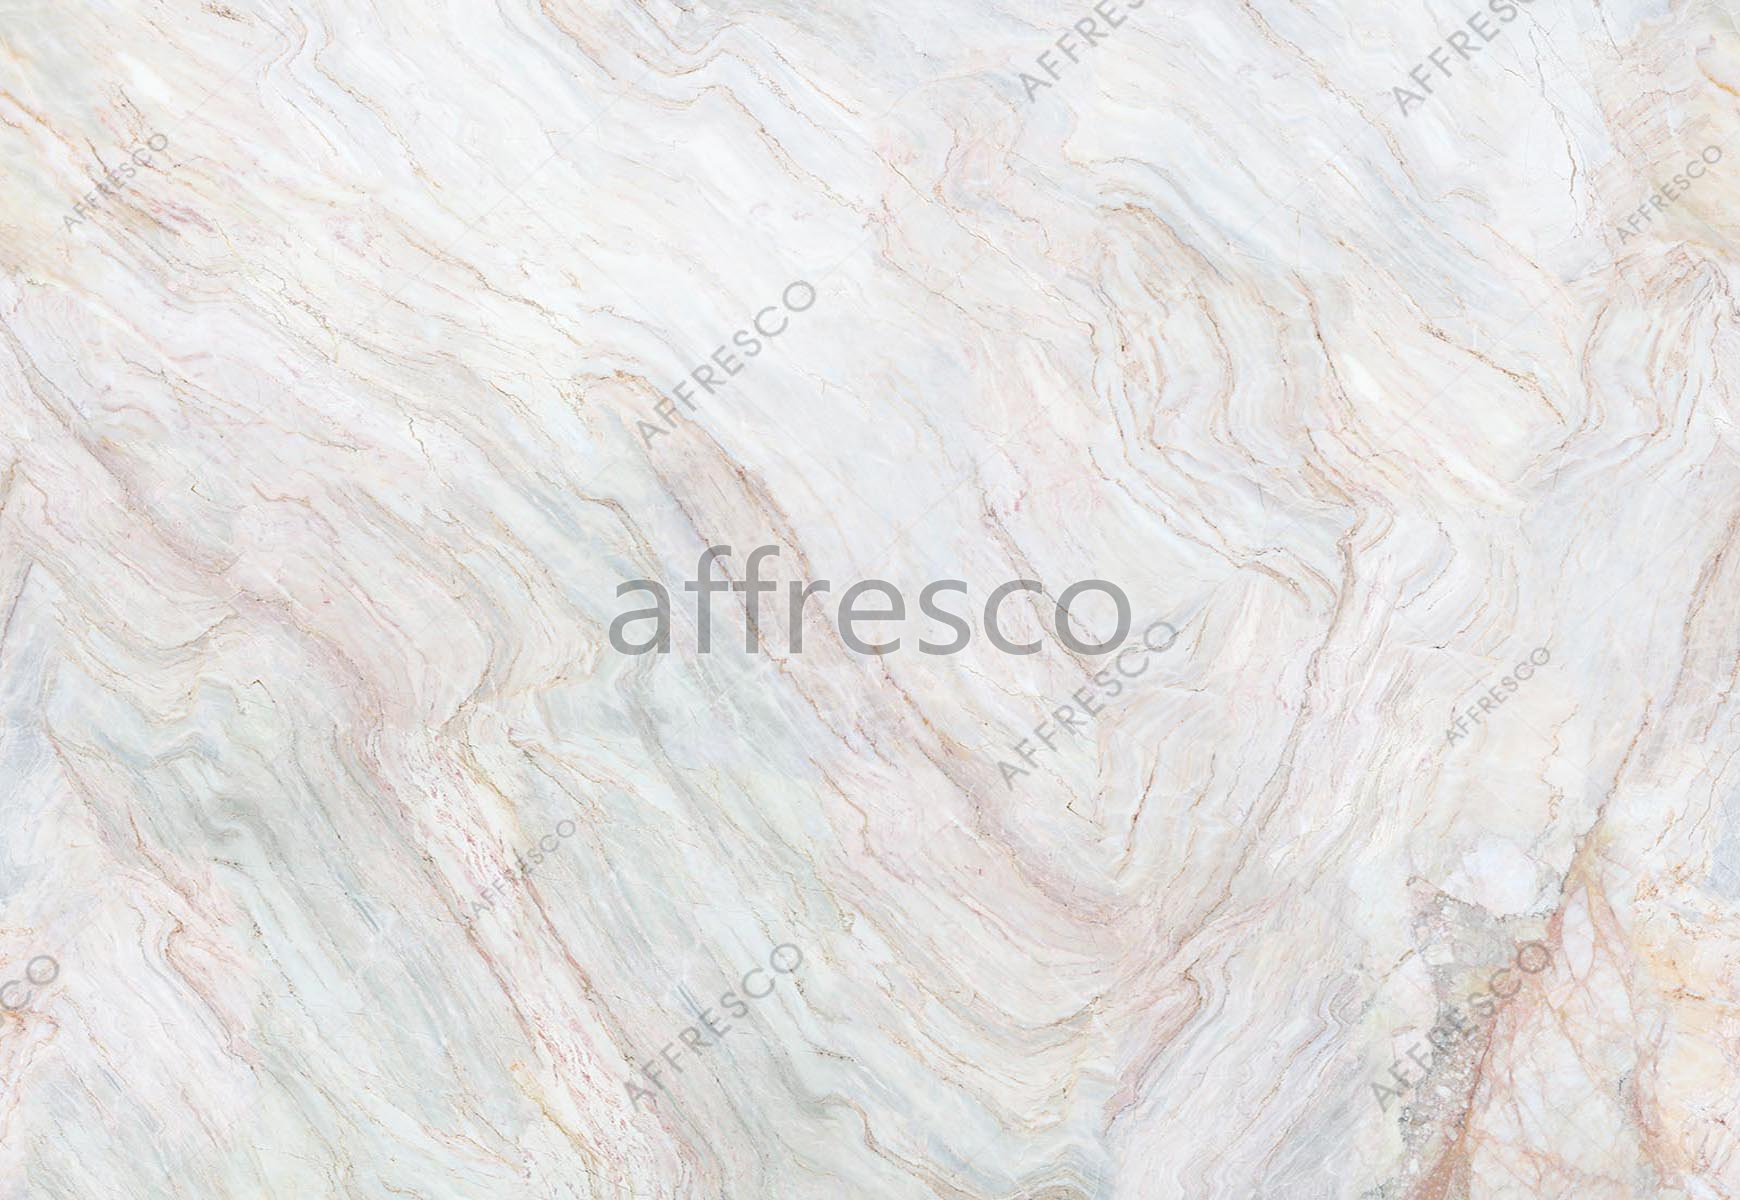 ID139124 | Fluid | stone cut | Affresco Factory